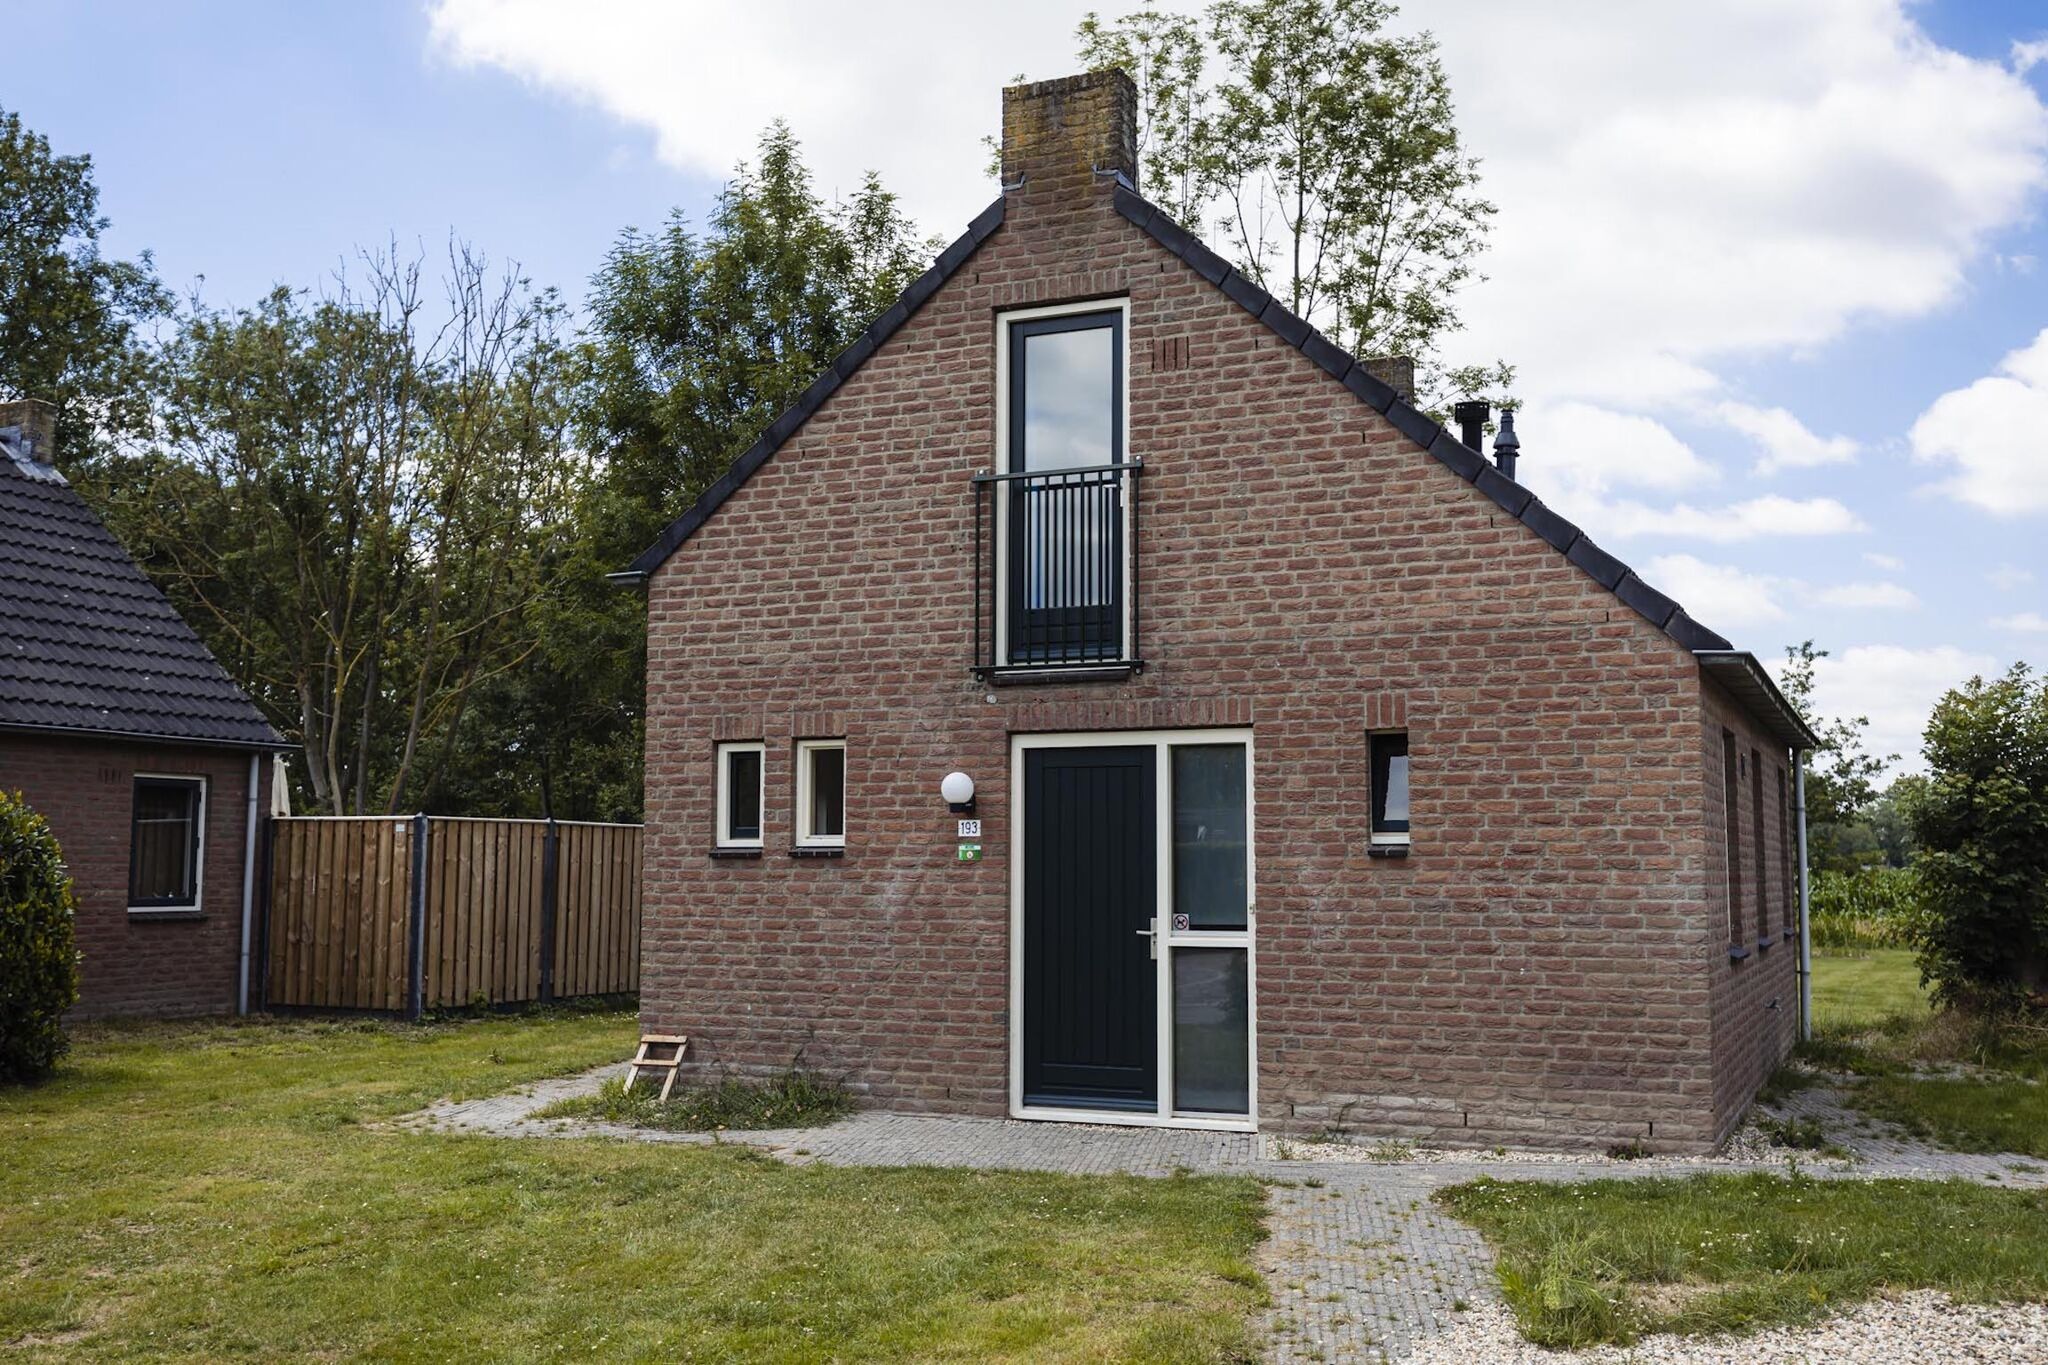 Maison de vacances indépendante près de Nijmegen